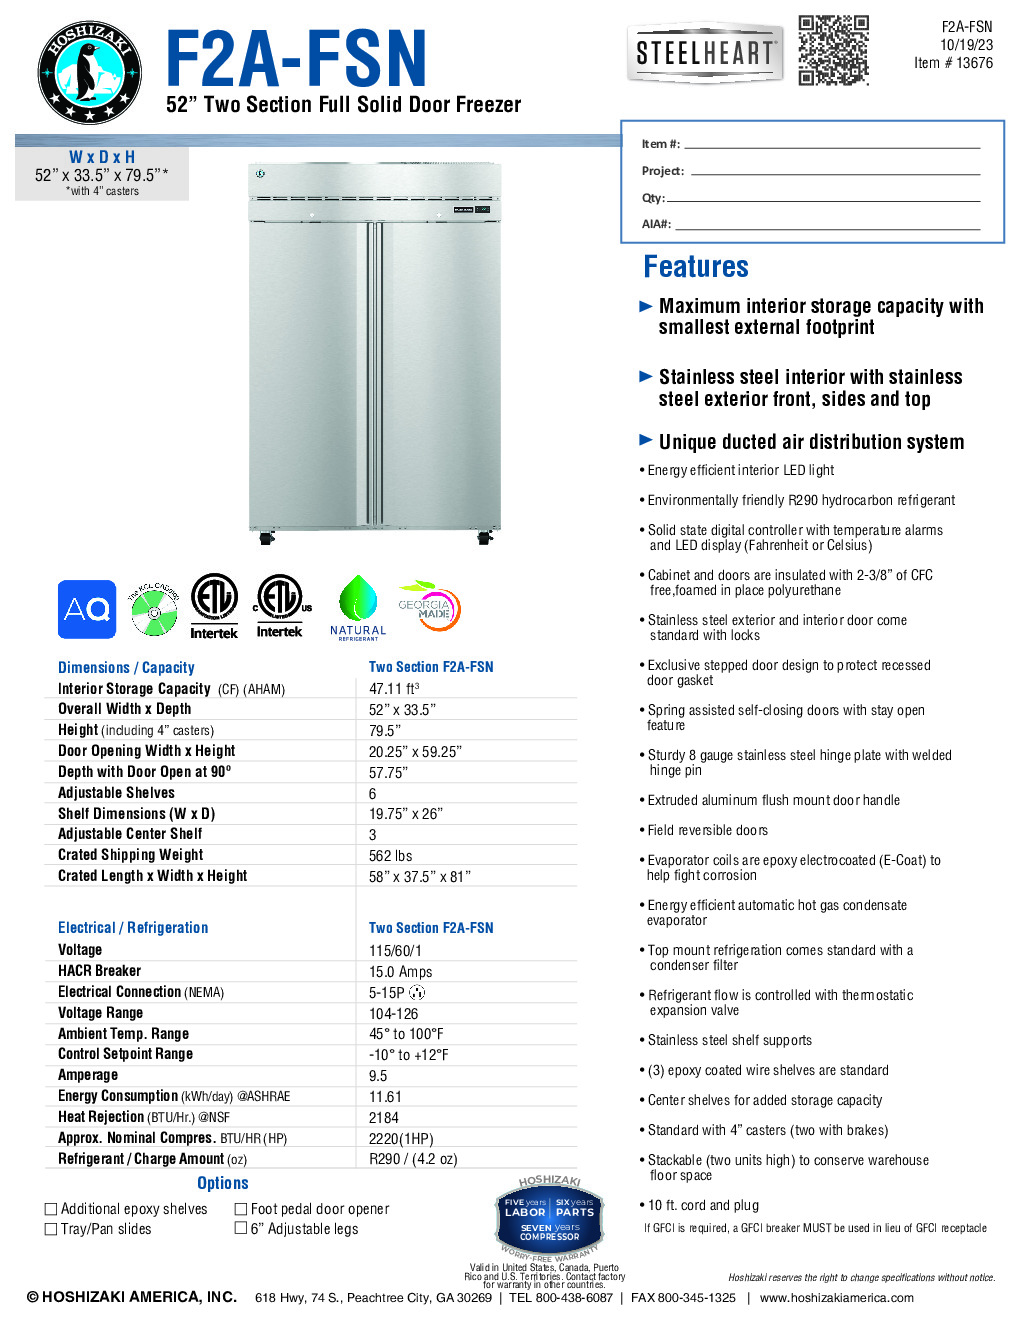 Hoshizaki F2A-FSN Reach-In Freezer